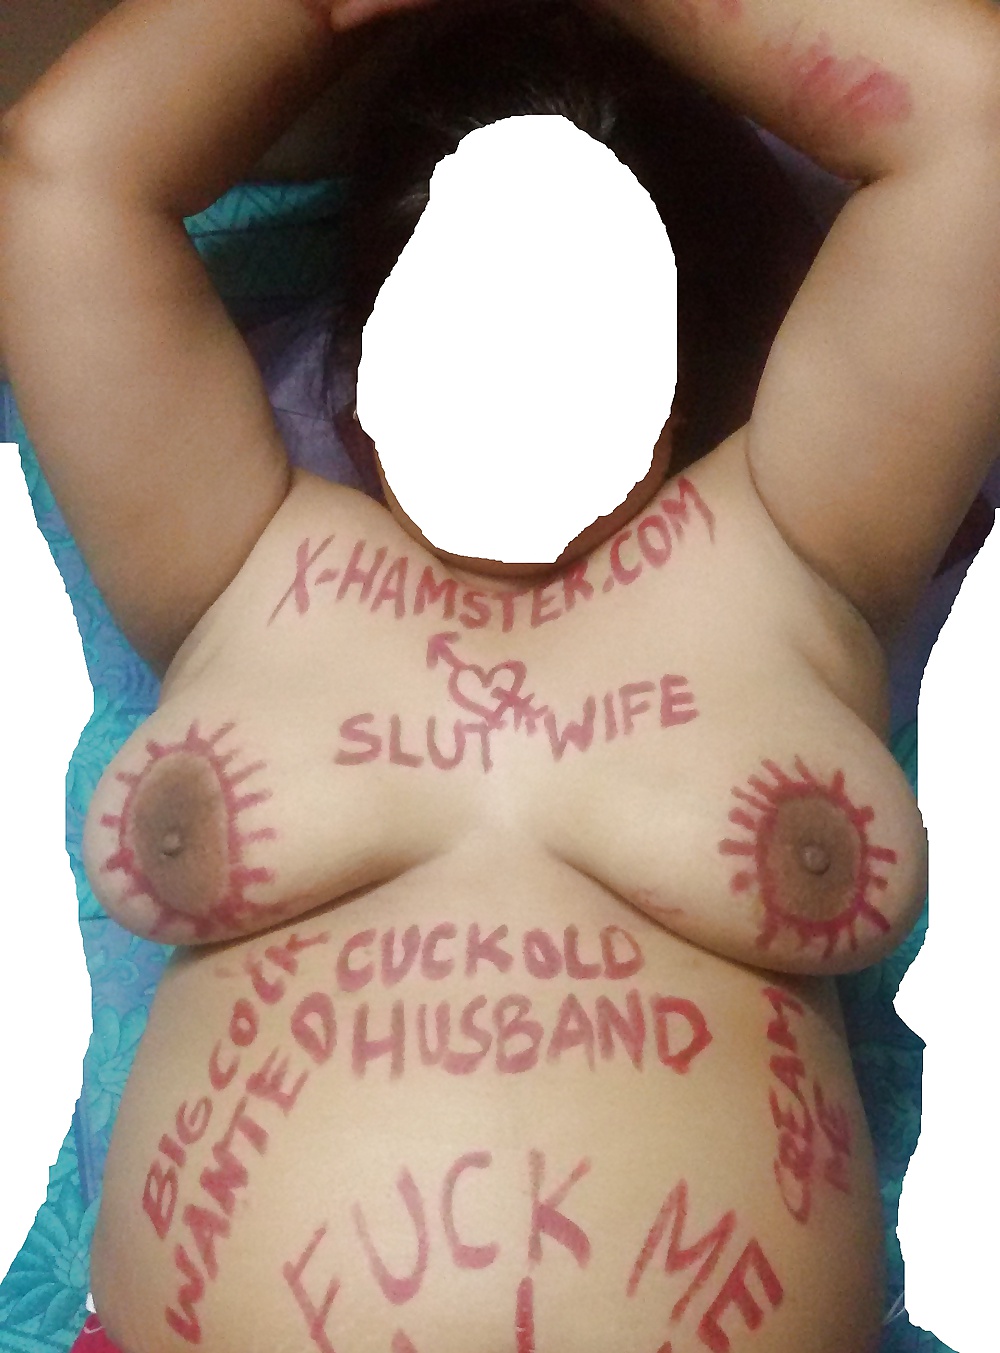 Mumbai Indian cuckold. Body Writing #30420650